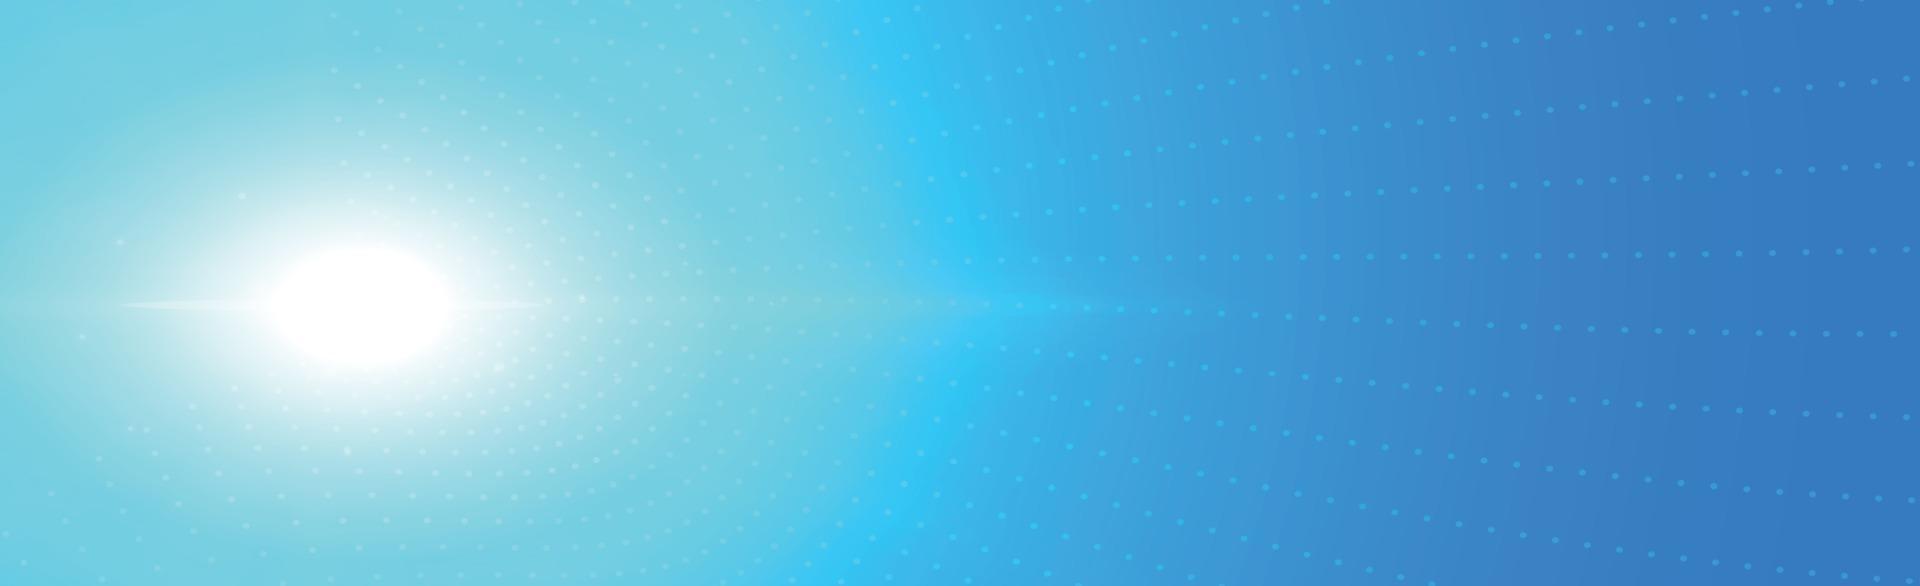 sfondo soleggiato panoramico in morbido colore blu - illustrazione vettore